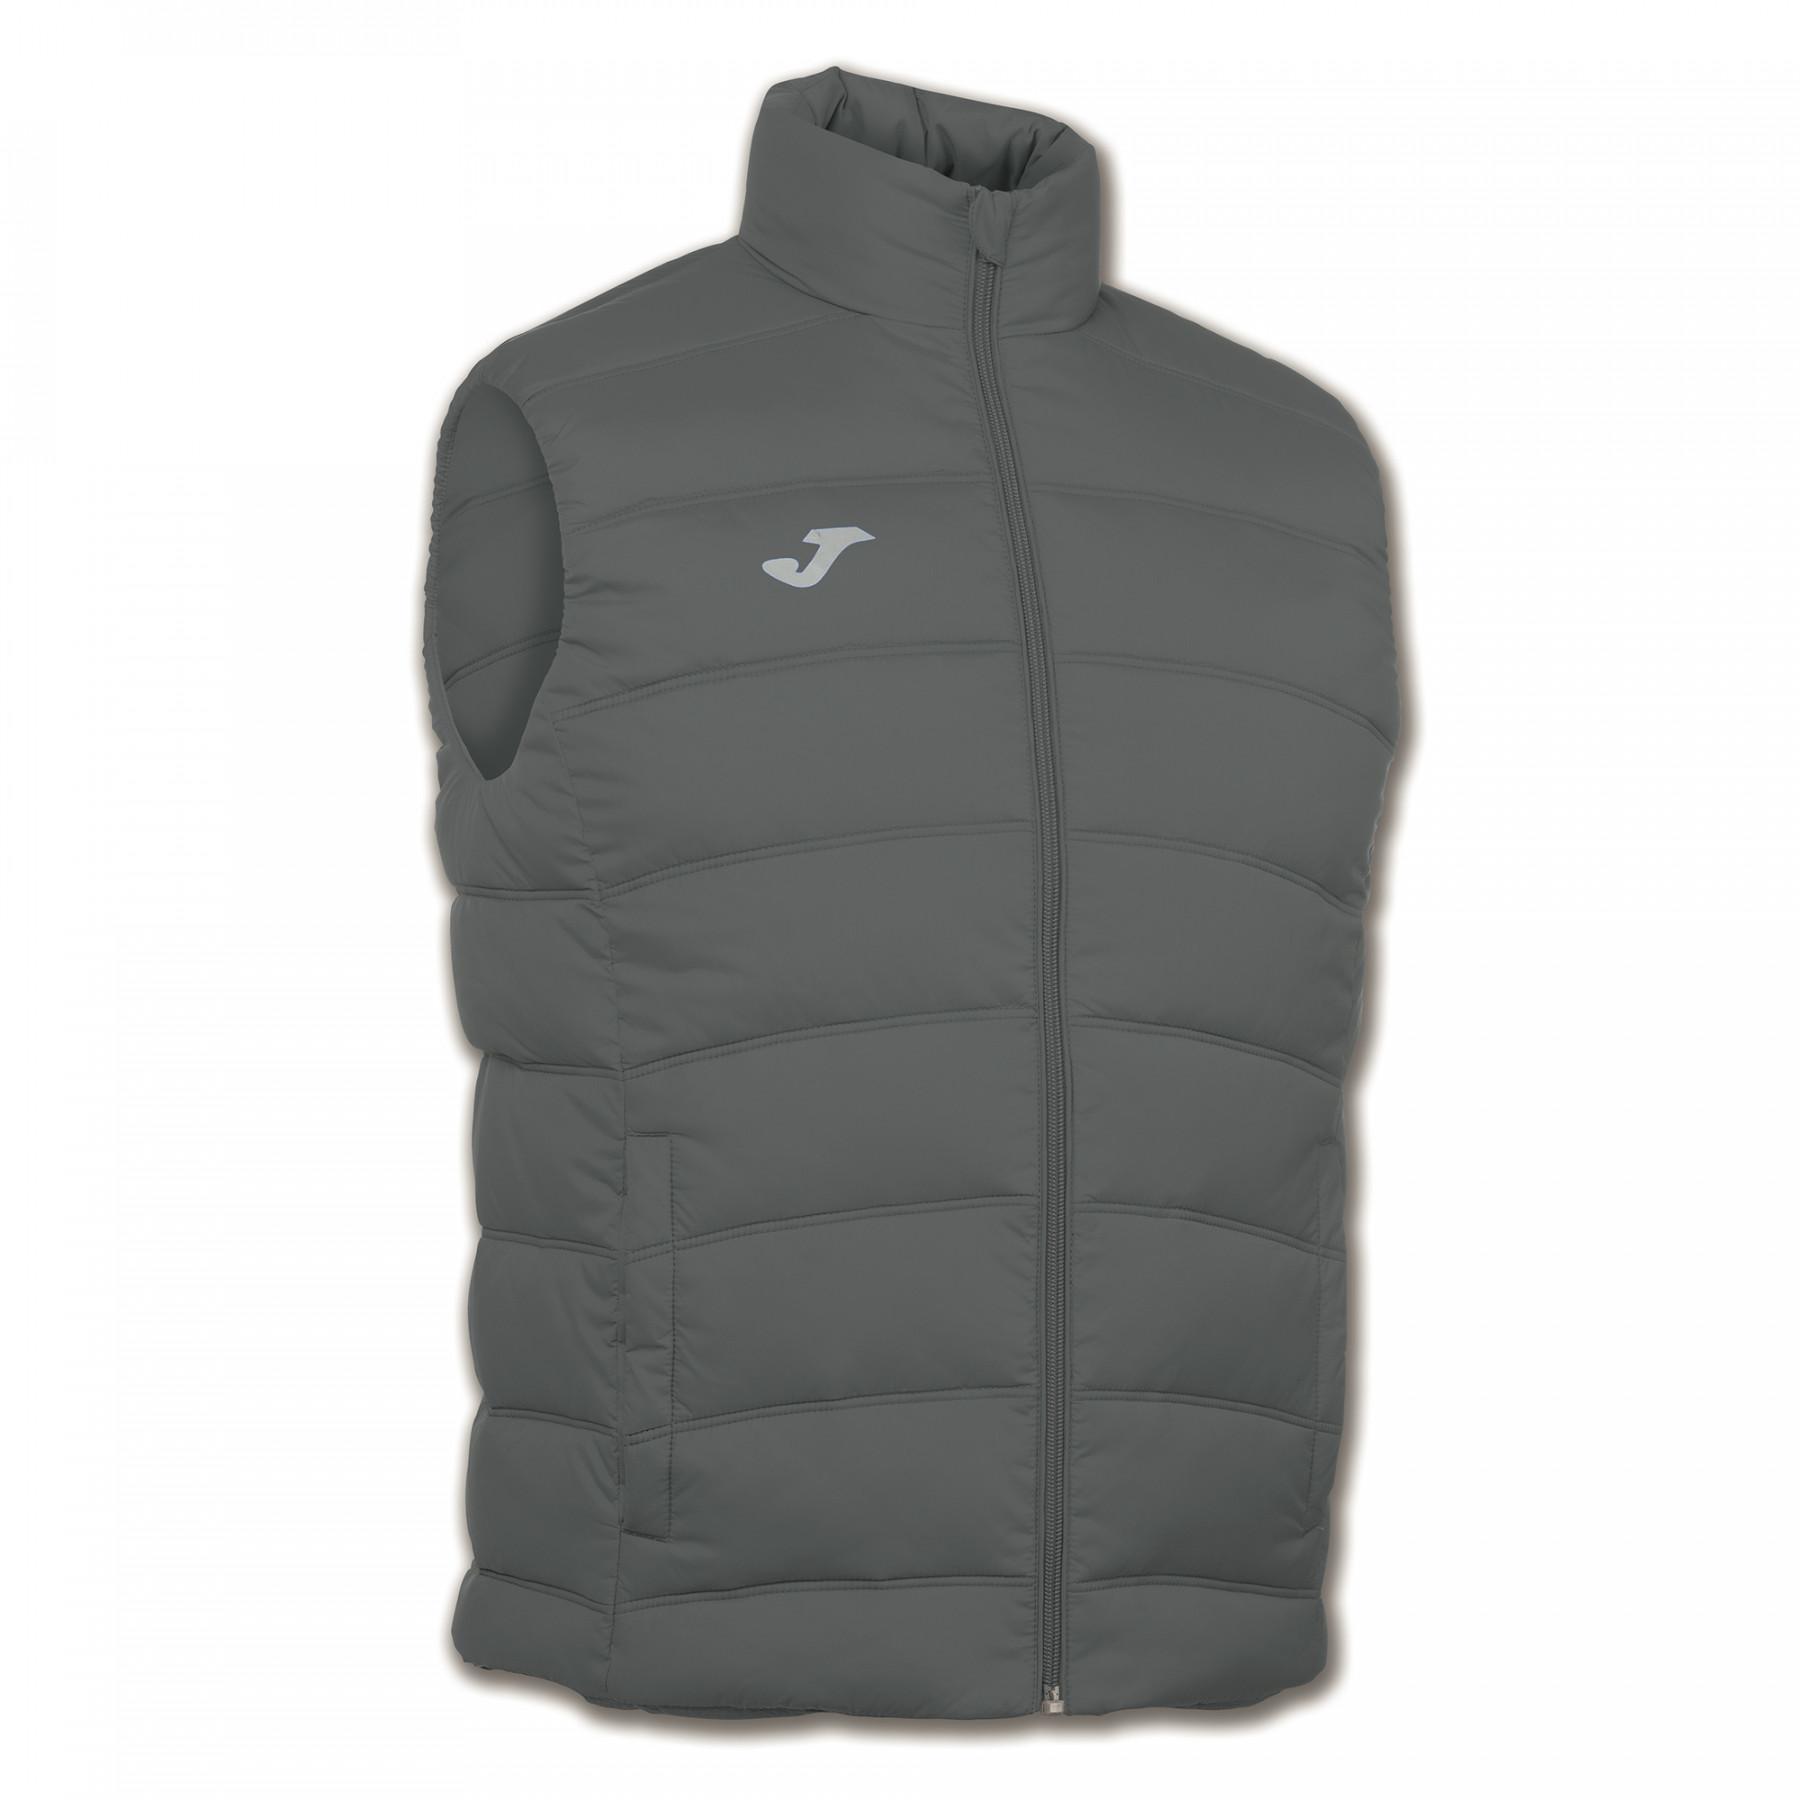 Sleeveless jacket for children Joma Urban vest